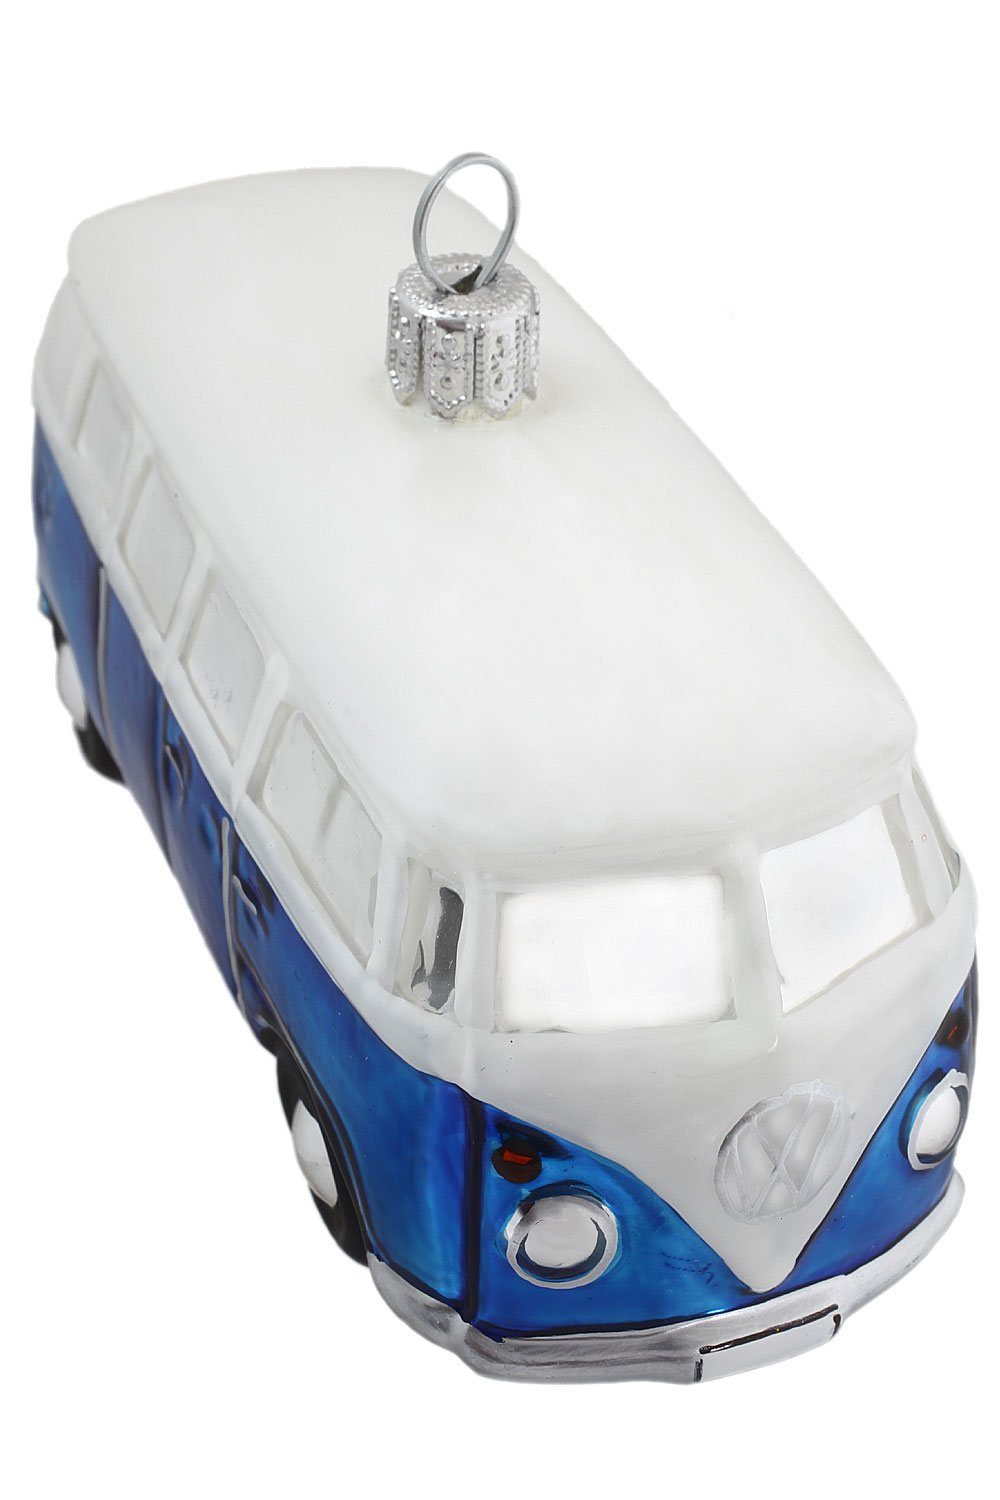 Bus VW Official Christbaumschmuck handdekoriert Hamburger Dekohänger - Licensed blau - mundgeblasen Weihnachtskontor Produkt,